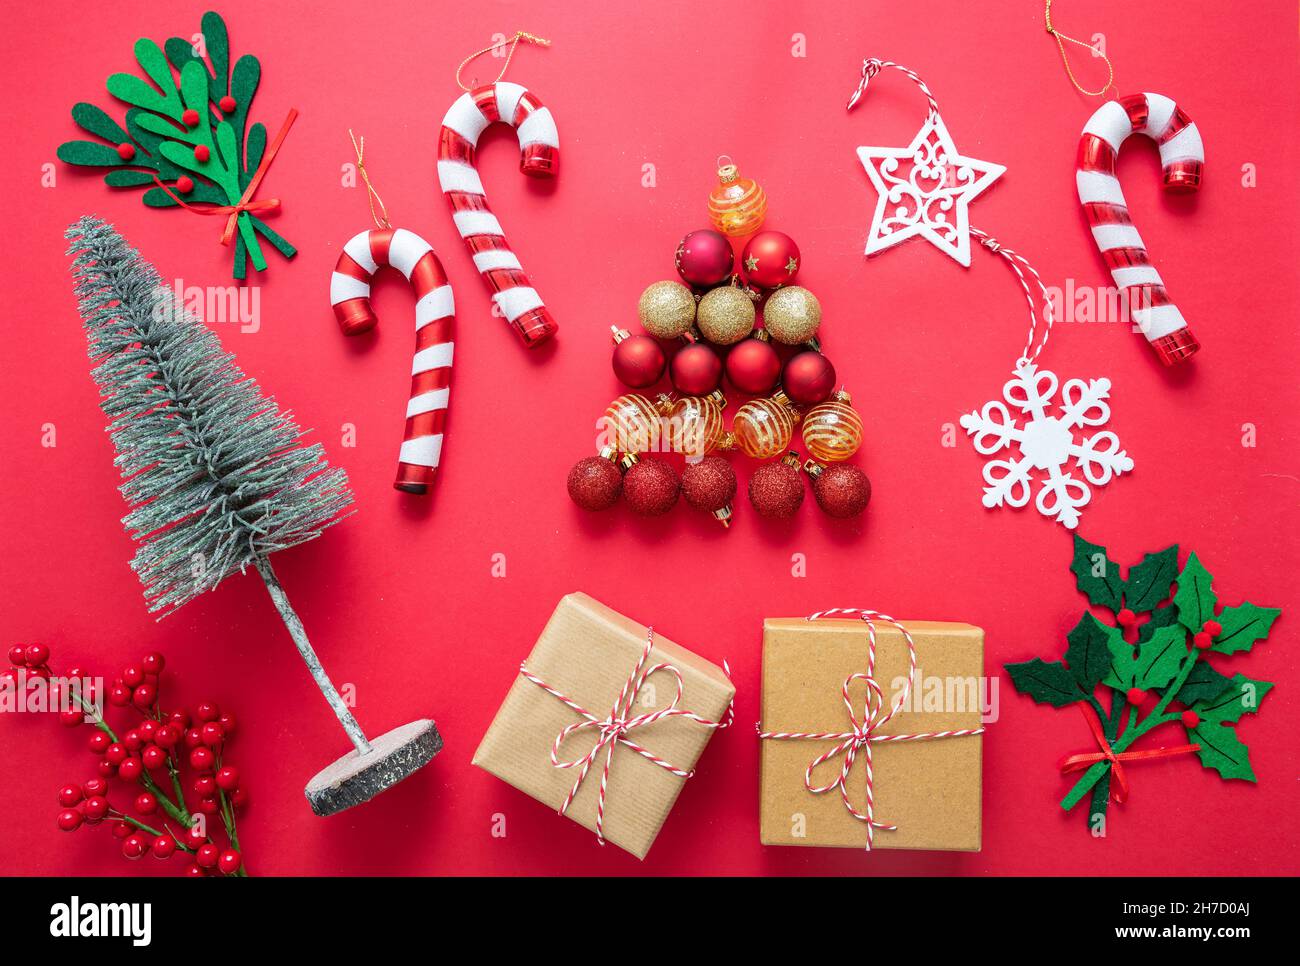 Décoration de Noël plat sur fond rouge.Cadeaux, sapin de Noël, boules et cannes à sucre.Joyeux Noël nouvel an, vue du dessus Banque D'Images